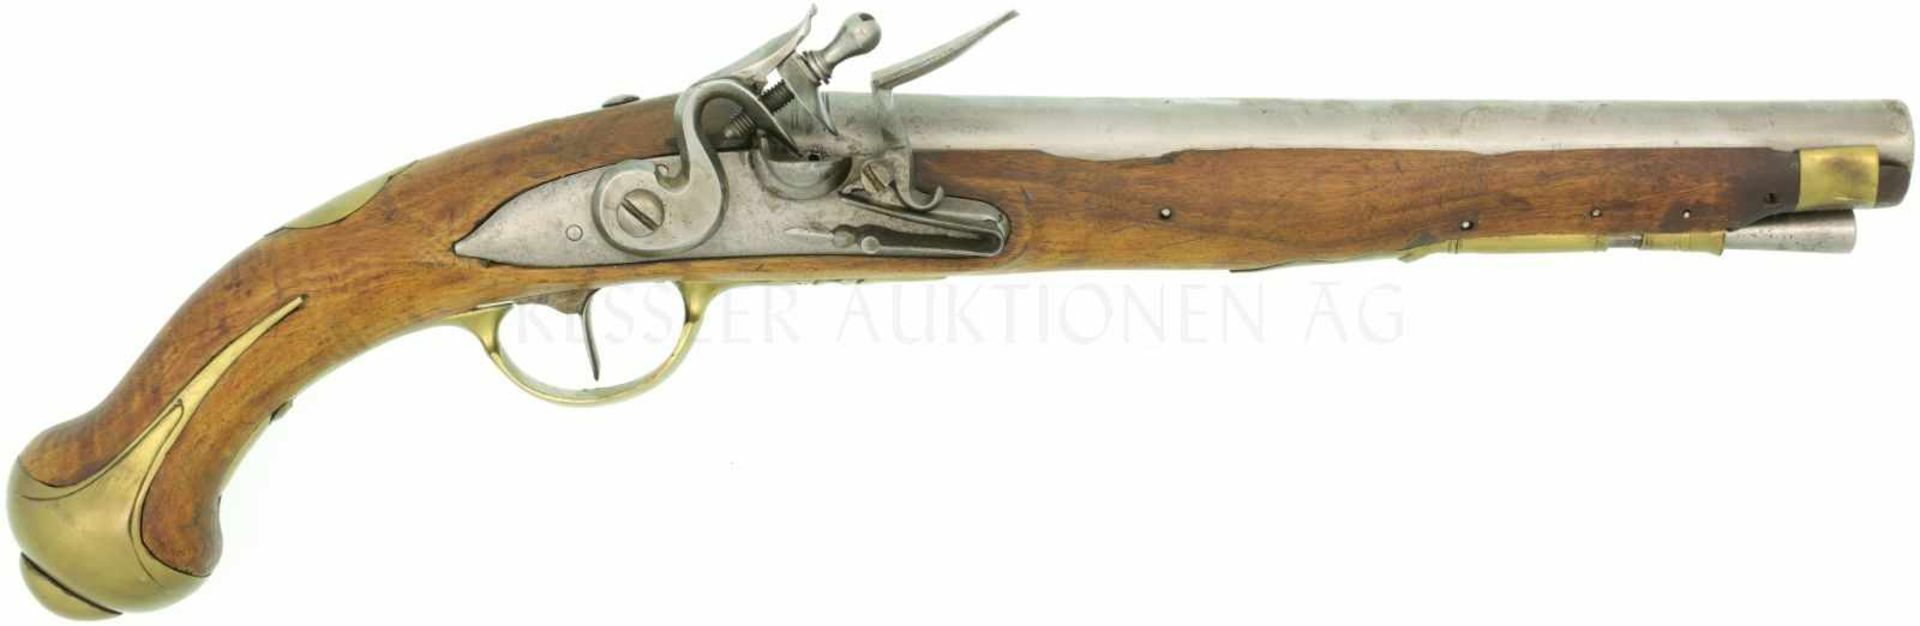 Steinschlosspistole, französisch, um 1700, Kal. 17.6mm LL 285mm, TL 470mm. Rundlauf, zwei Zierwulste